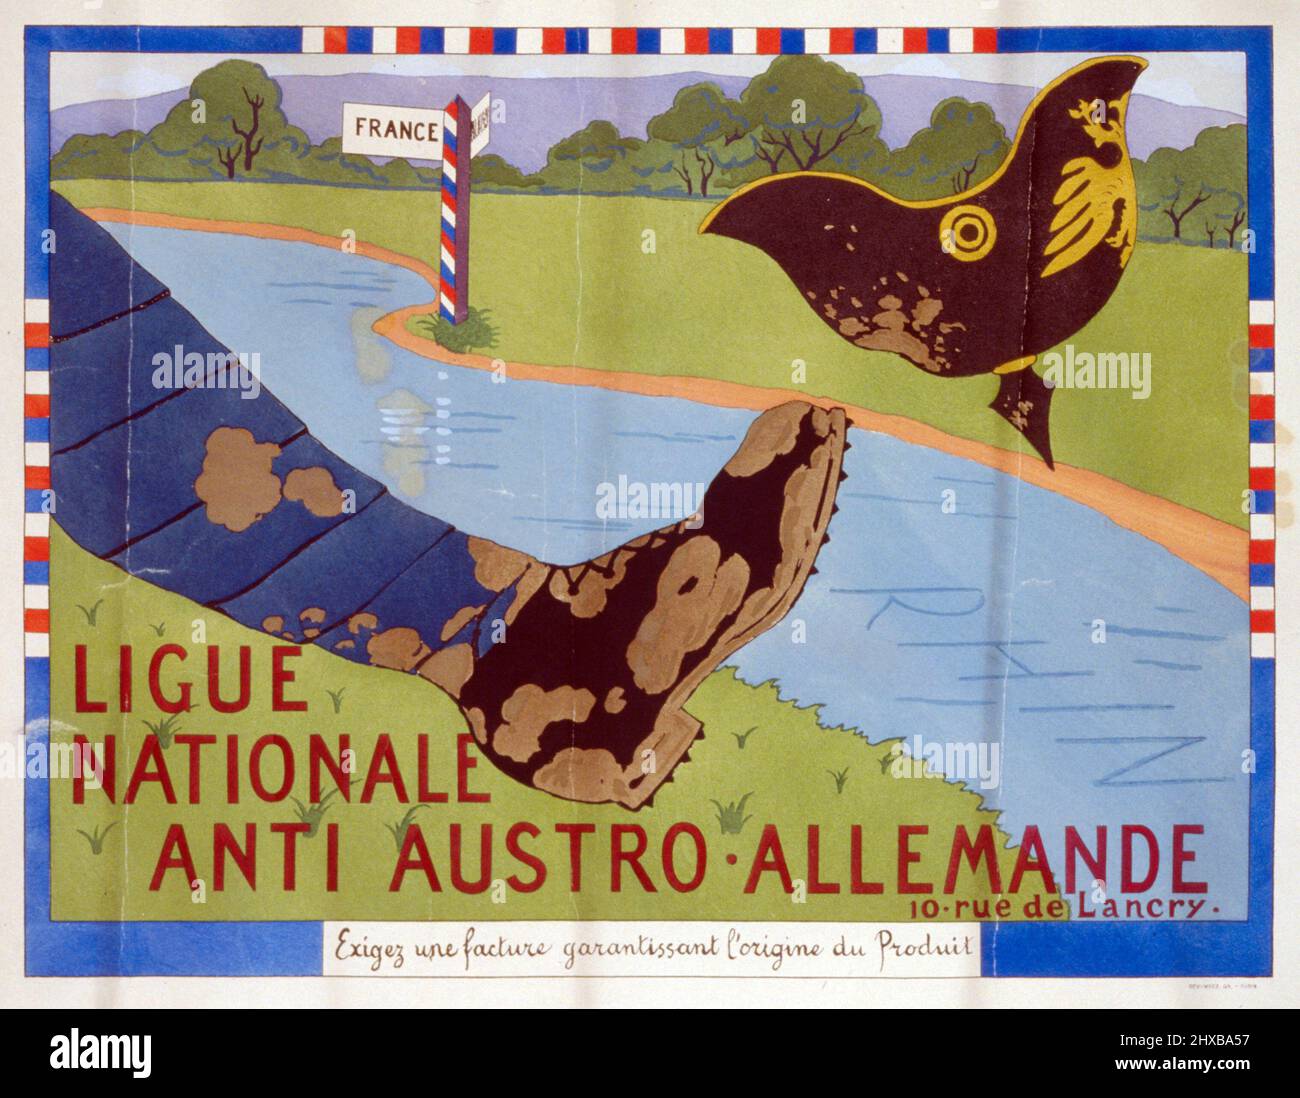 Ligue Nationale anti Austro-Allemande: Exigez une facture garantissant l'origine du produit. 1920. Foot kicking a German helmet over Rhine River. Stock Photo